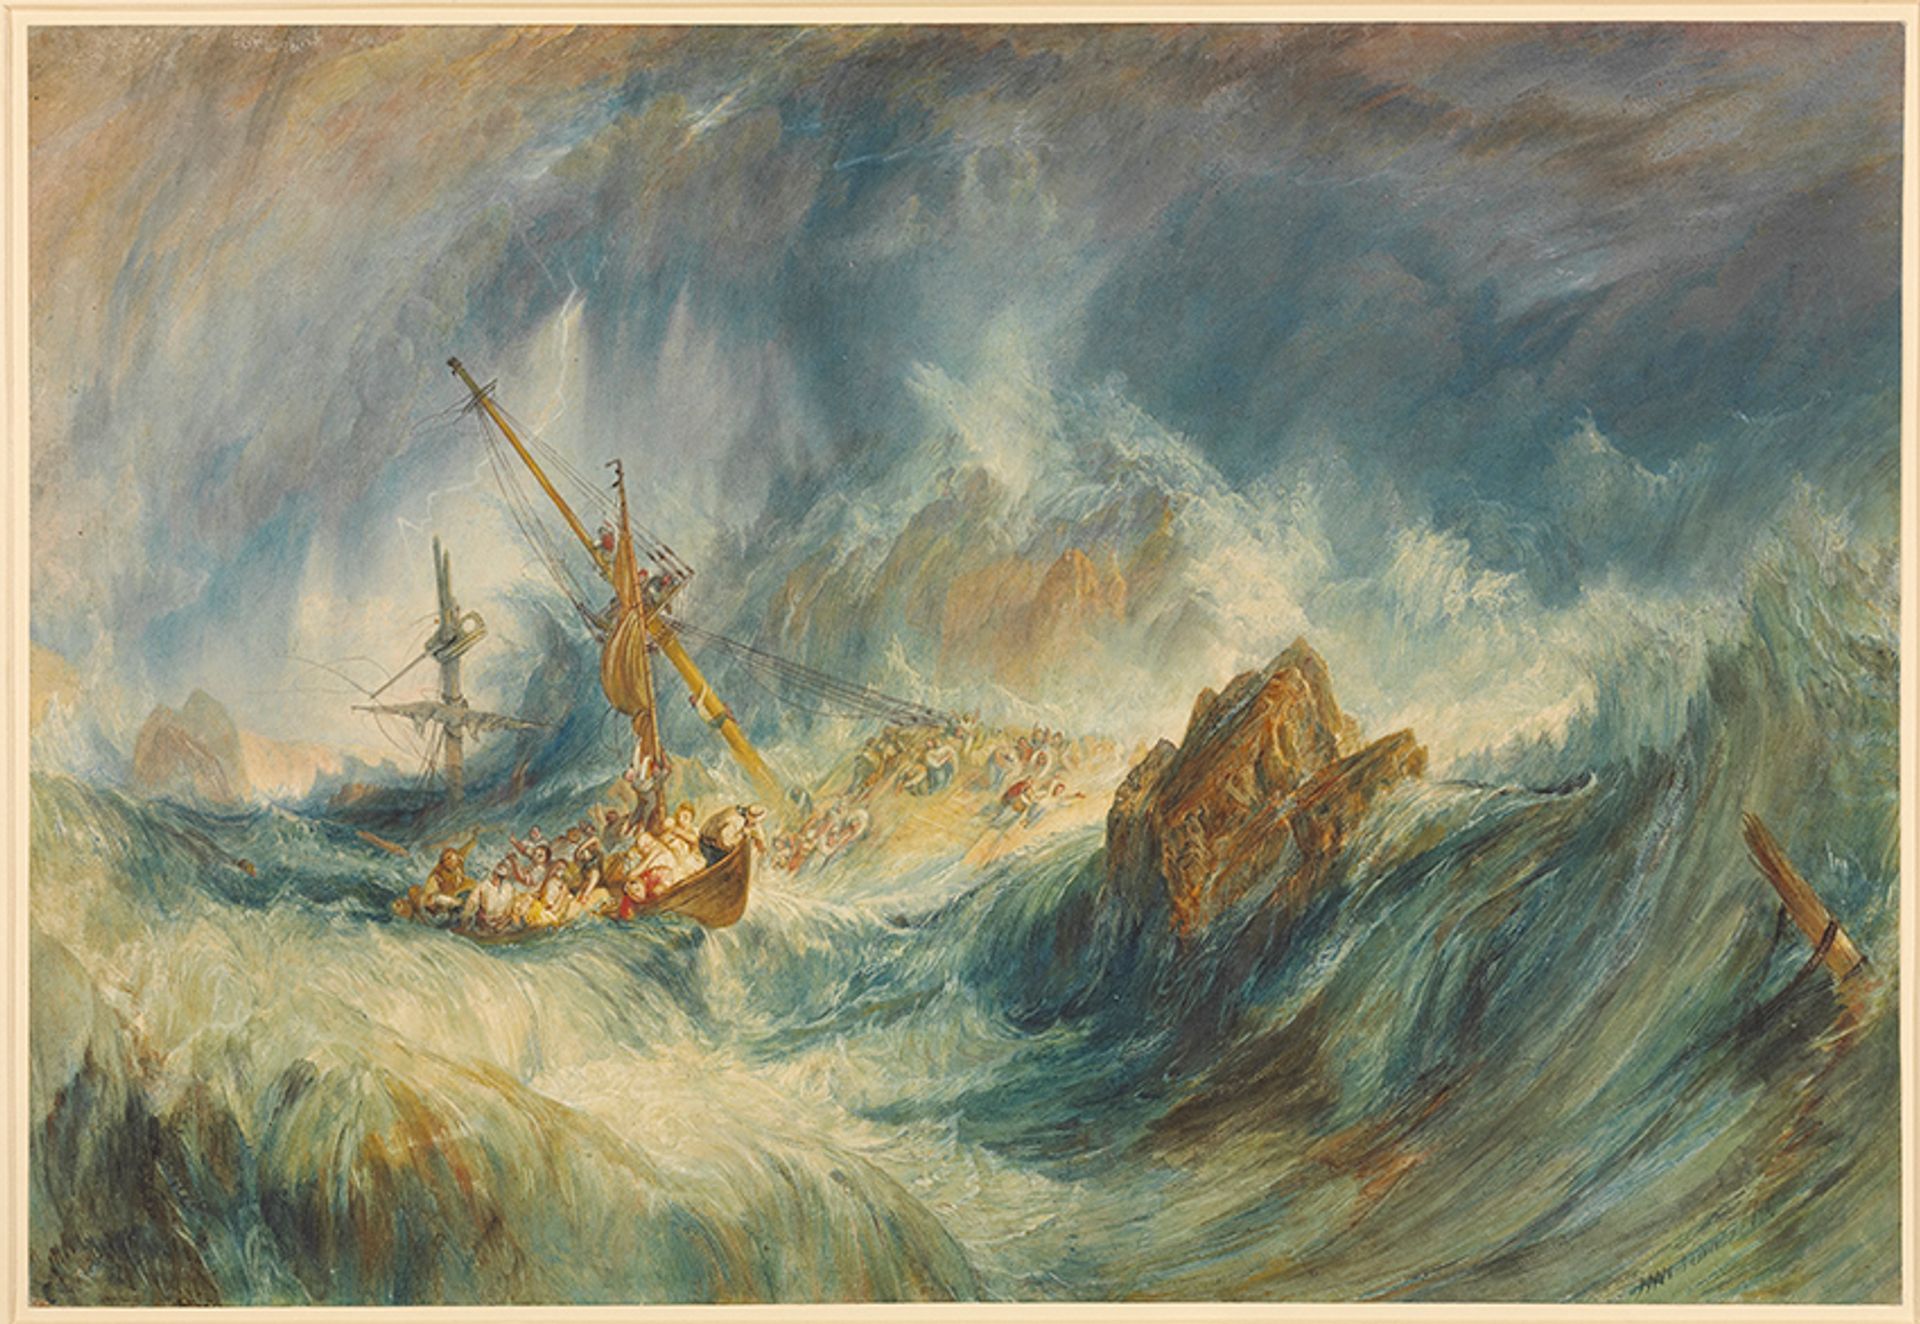 ג'וזף מלורד וויליאם טרנר, A Storm (Shipwreck, 1823)

© 2022, הנאמנים של המוזיאון הבריטי